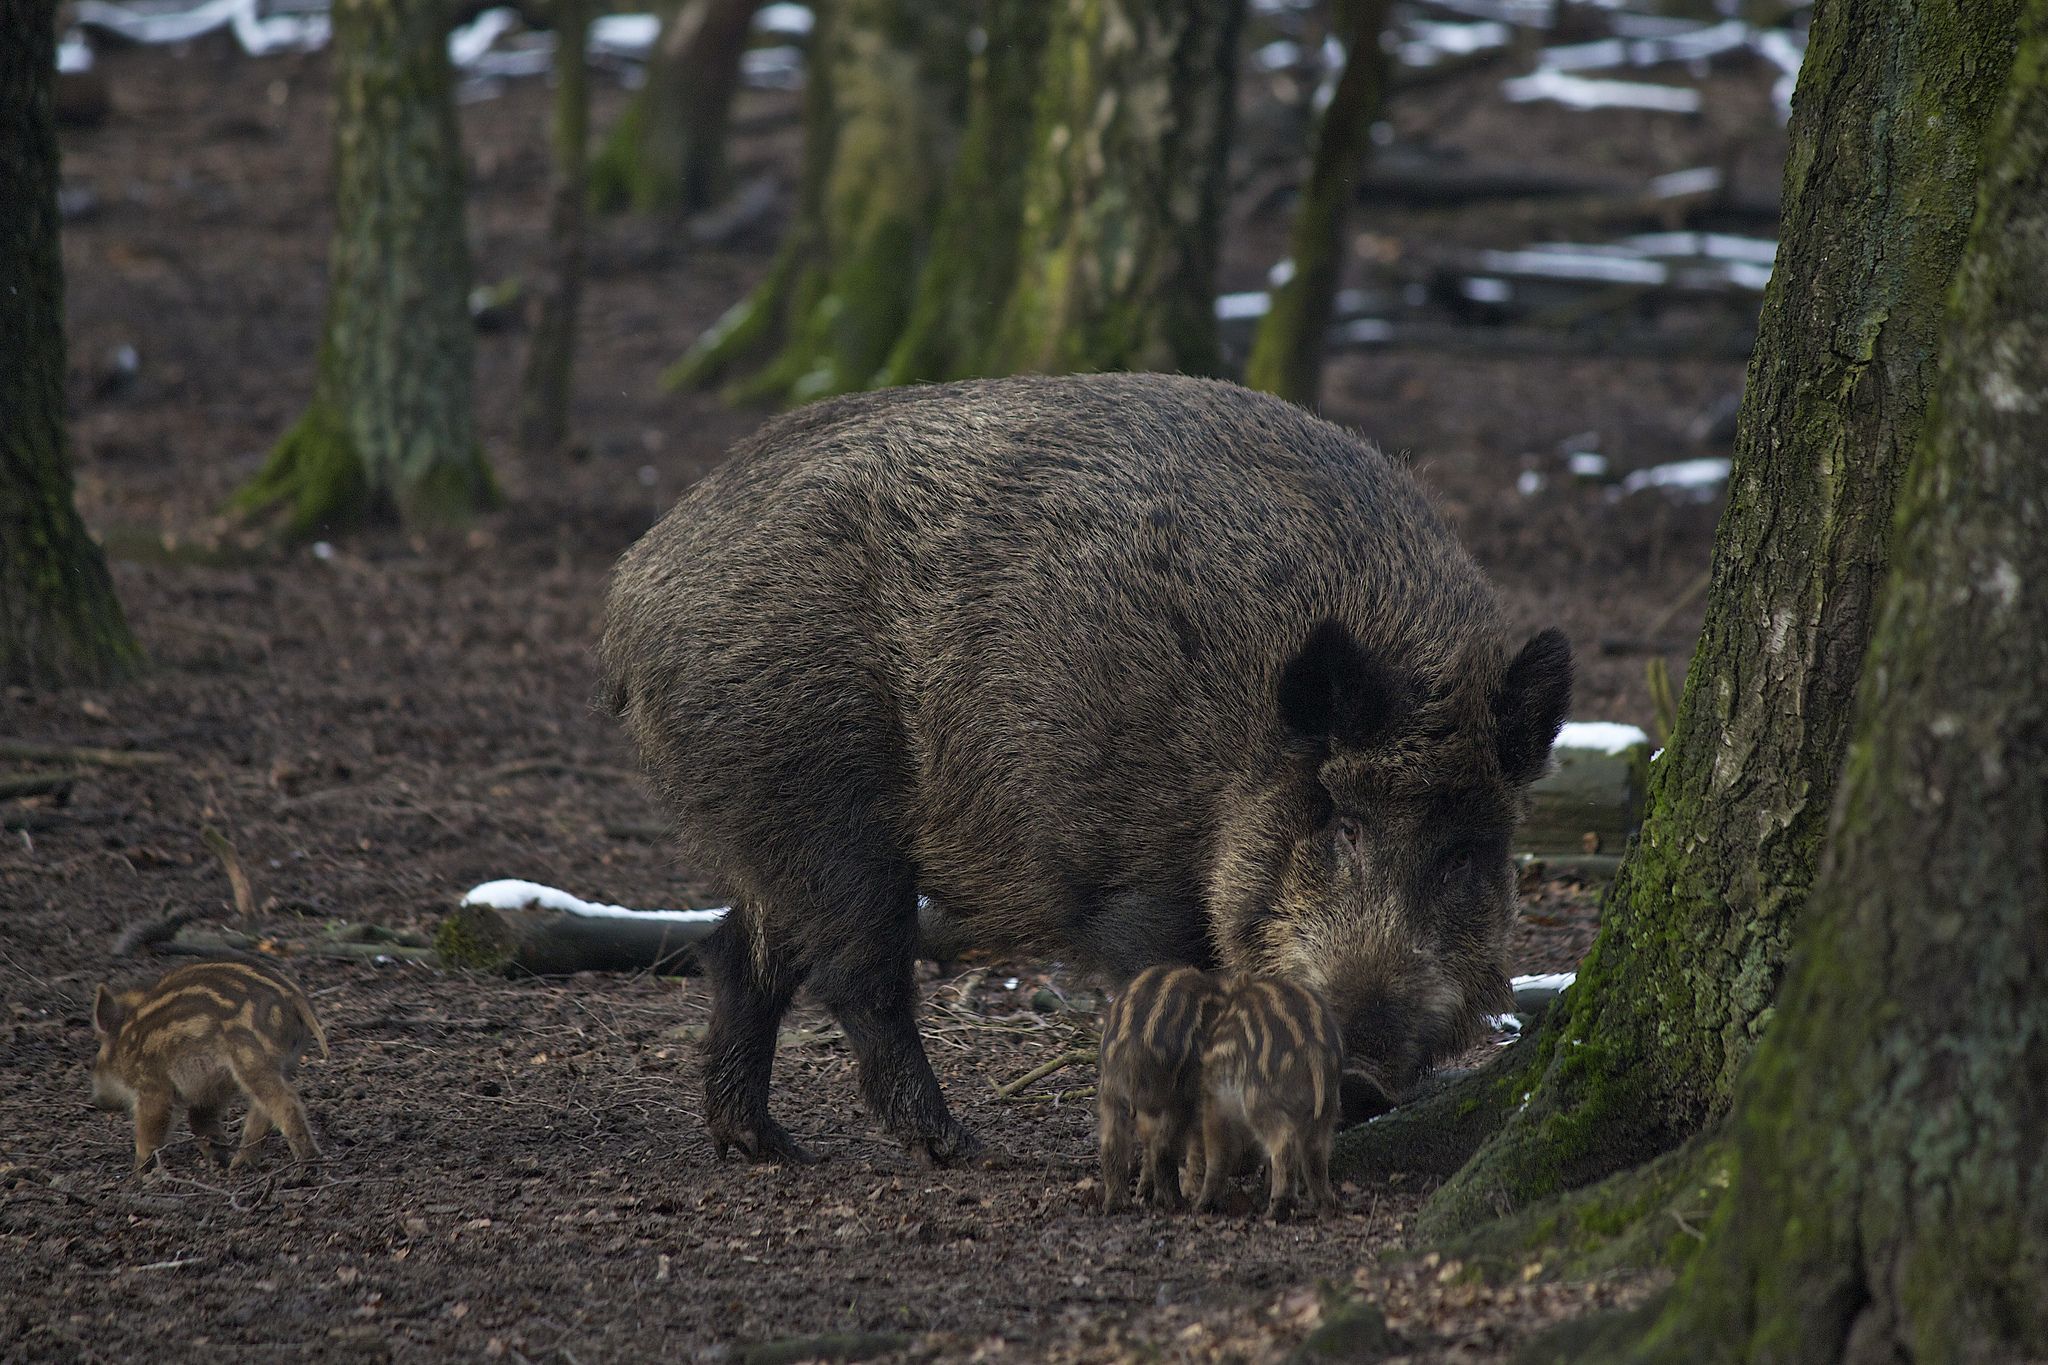 В Беларуси в 2013 г. в связи с опасностью АЧС (африканской чумы свиней) было принято решение об уменьшении численности диких свиней, которое переросло в изъятие данного вида из нашей природы. Если в 2013 году в Беларуси насчитывалось обитающих в охотничьих угодьях 80,4 тыс. особей, то уже в 2014 только 8,6 тыс. Данные о 2015 г. умалчиваются и приводится все та же прошлогодняя цифра.